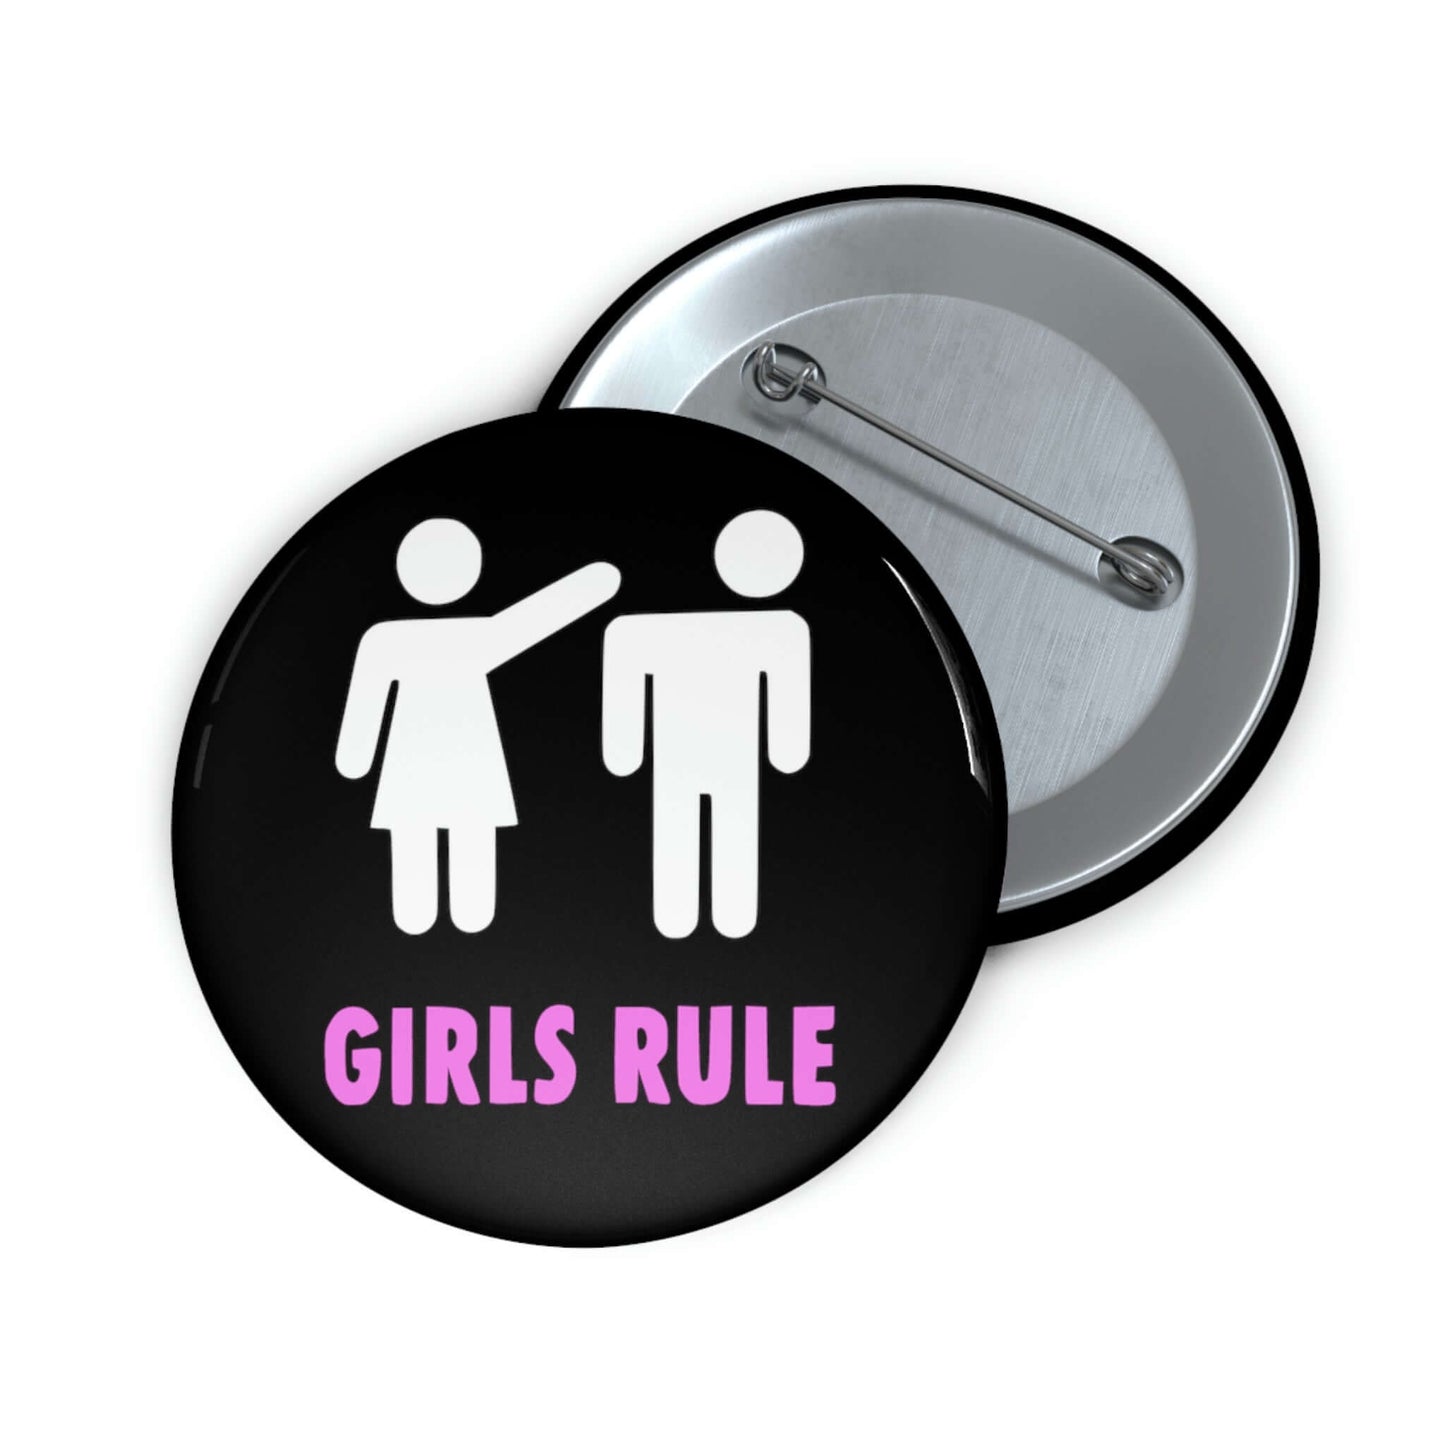 Girls rule pin button